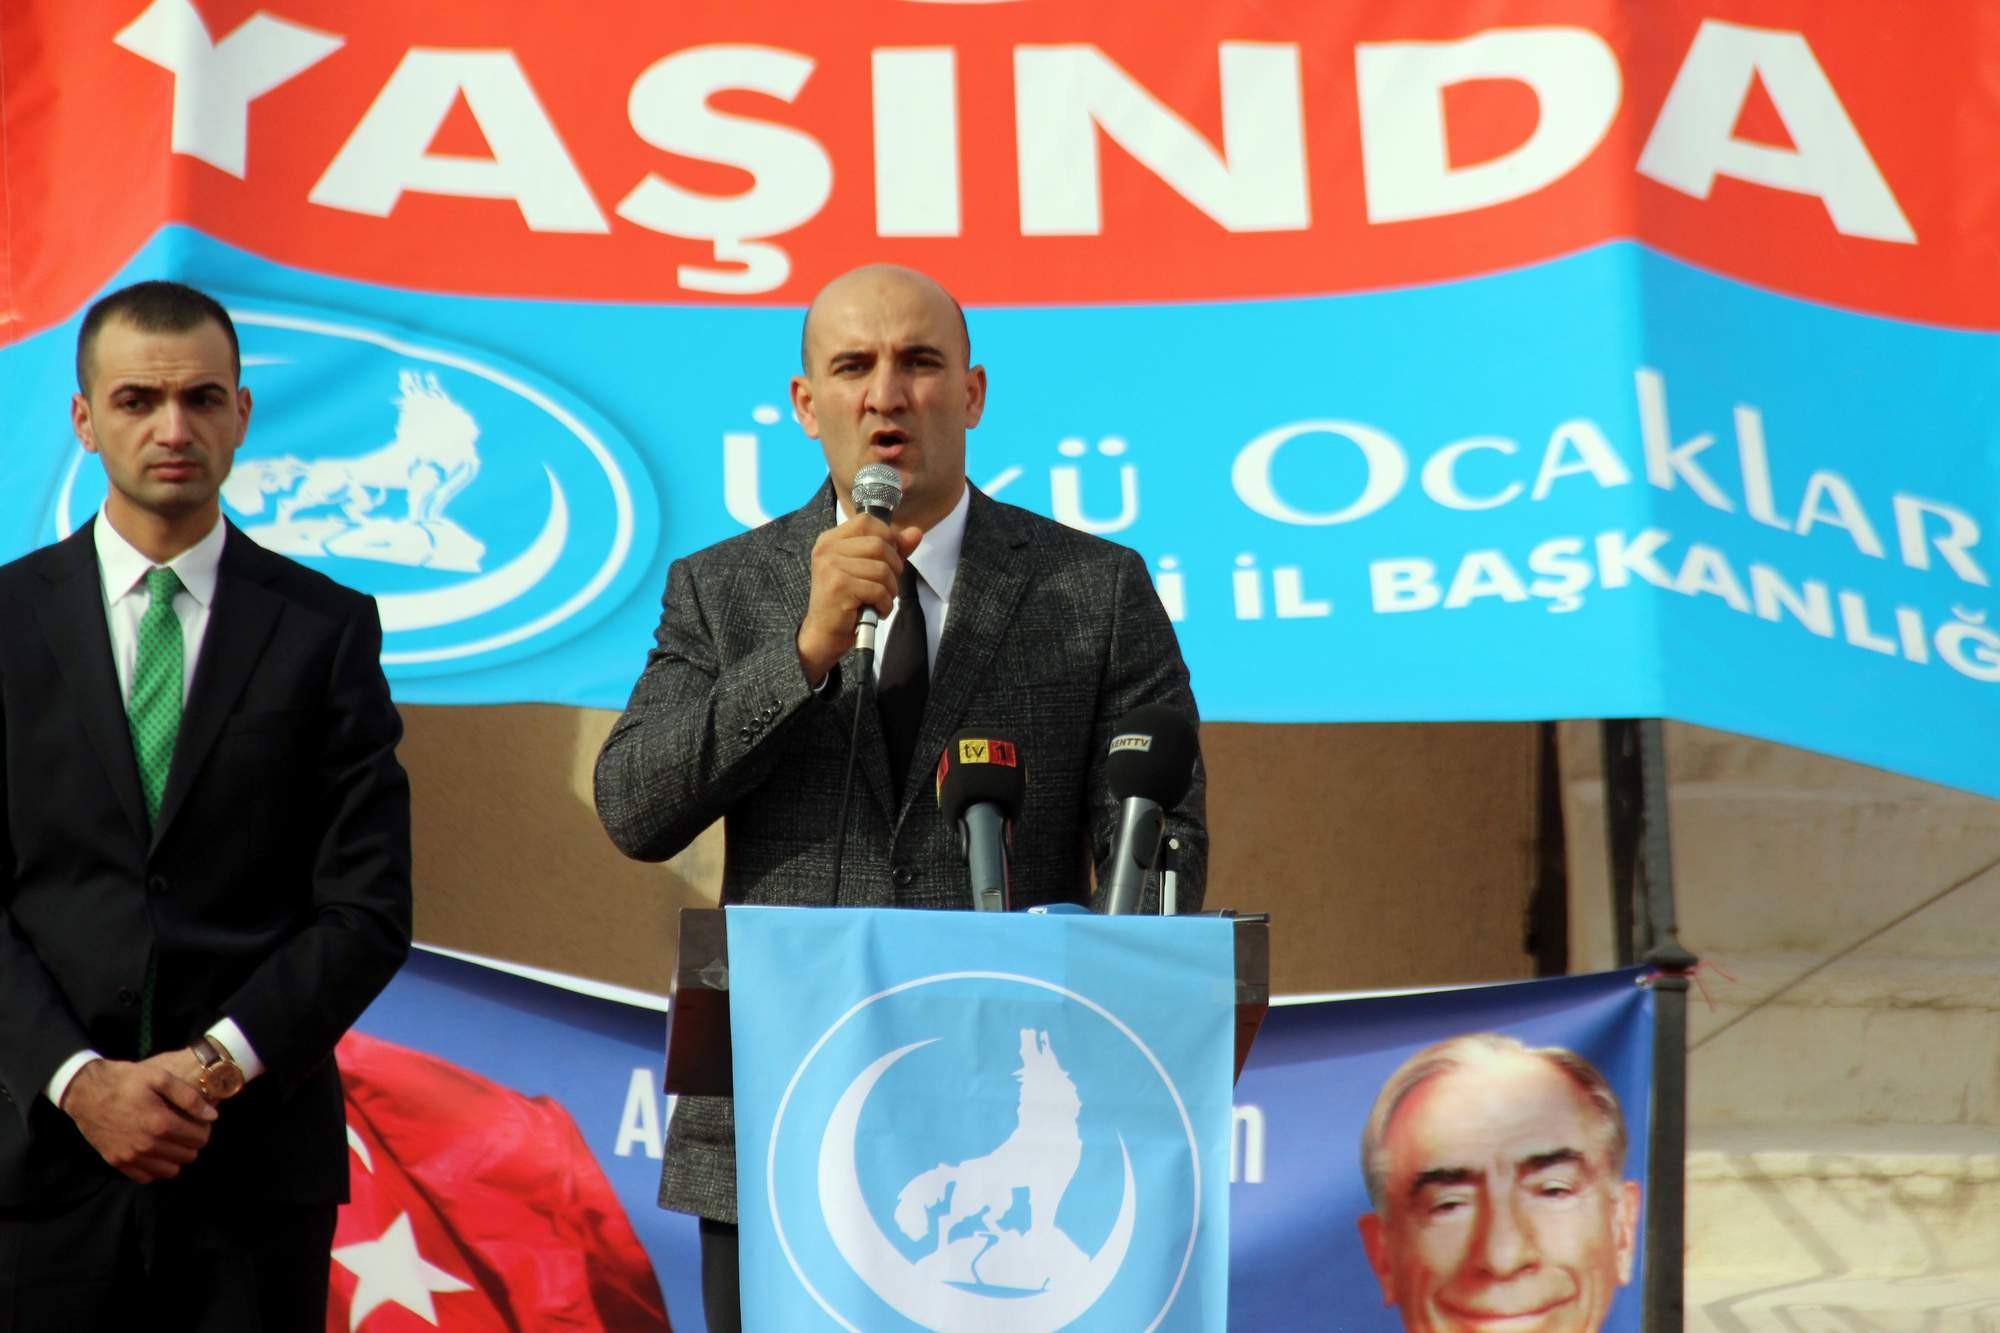 Ülkü Ocakları Genel Başkanı Olcay Kılavuz: “26 Kasım’da Ankara çok başka bir güne şahitlik edecektir”